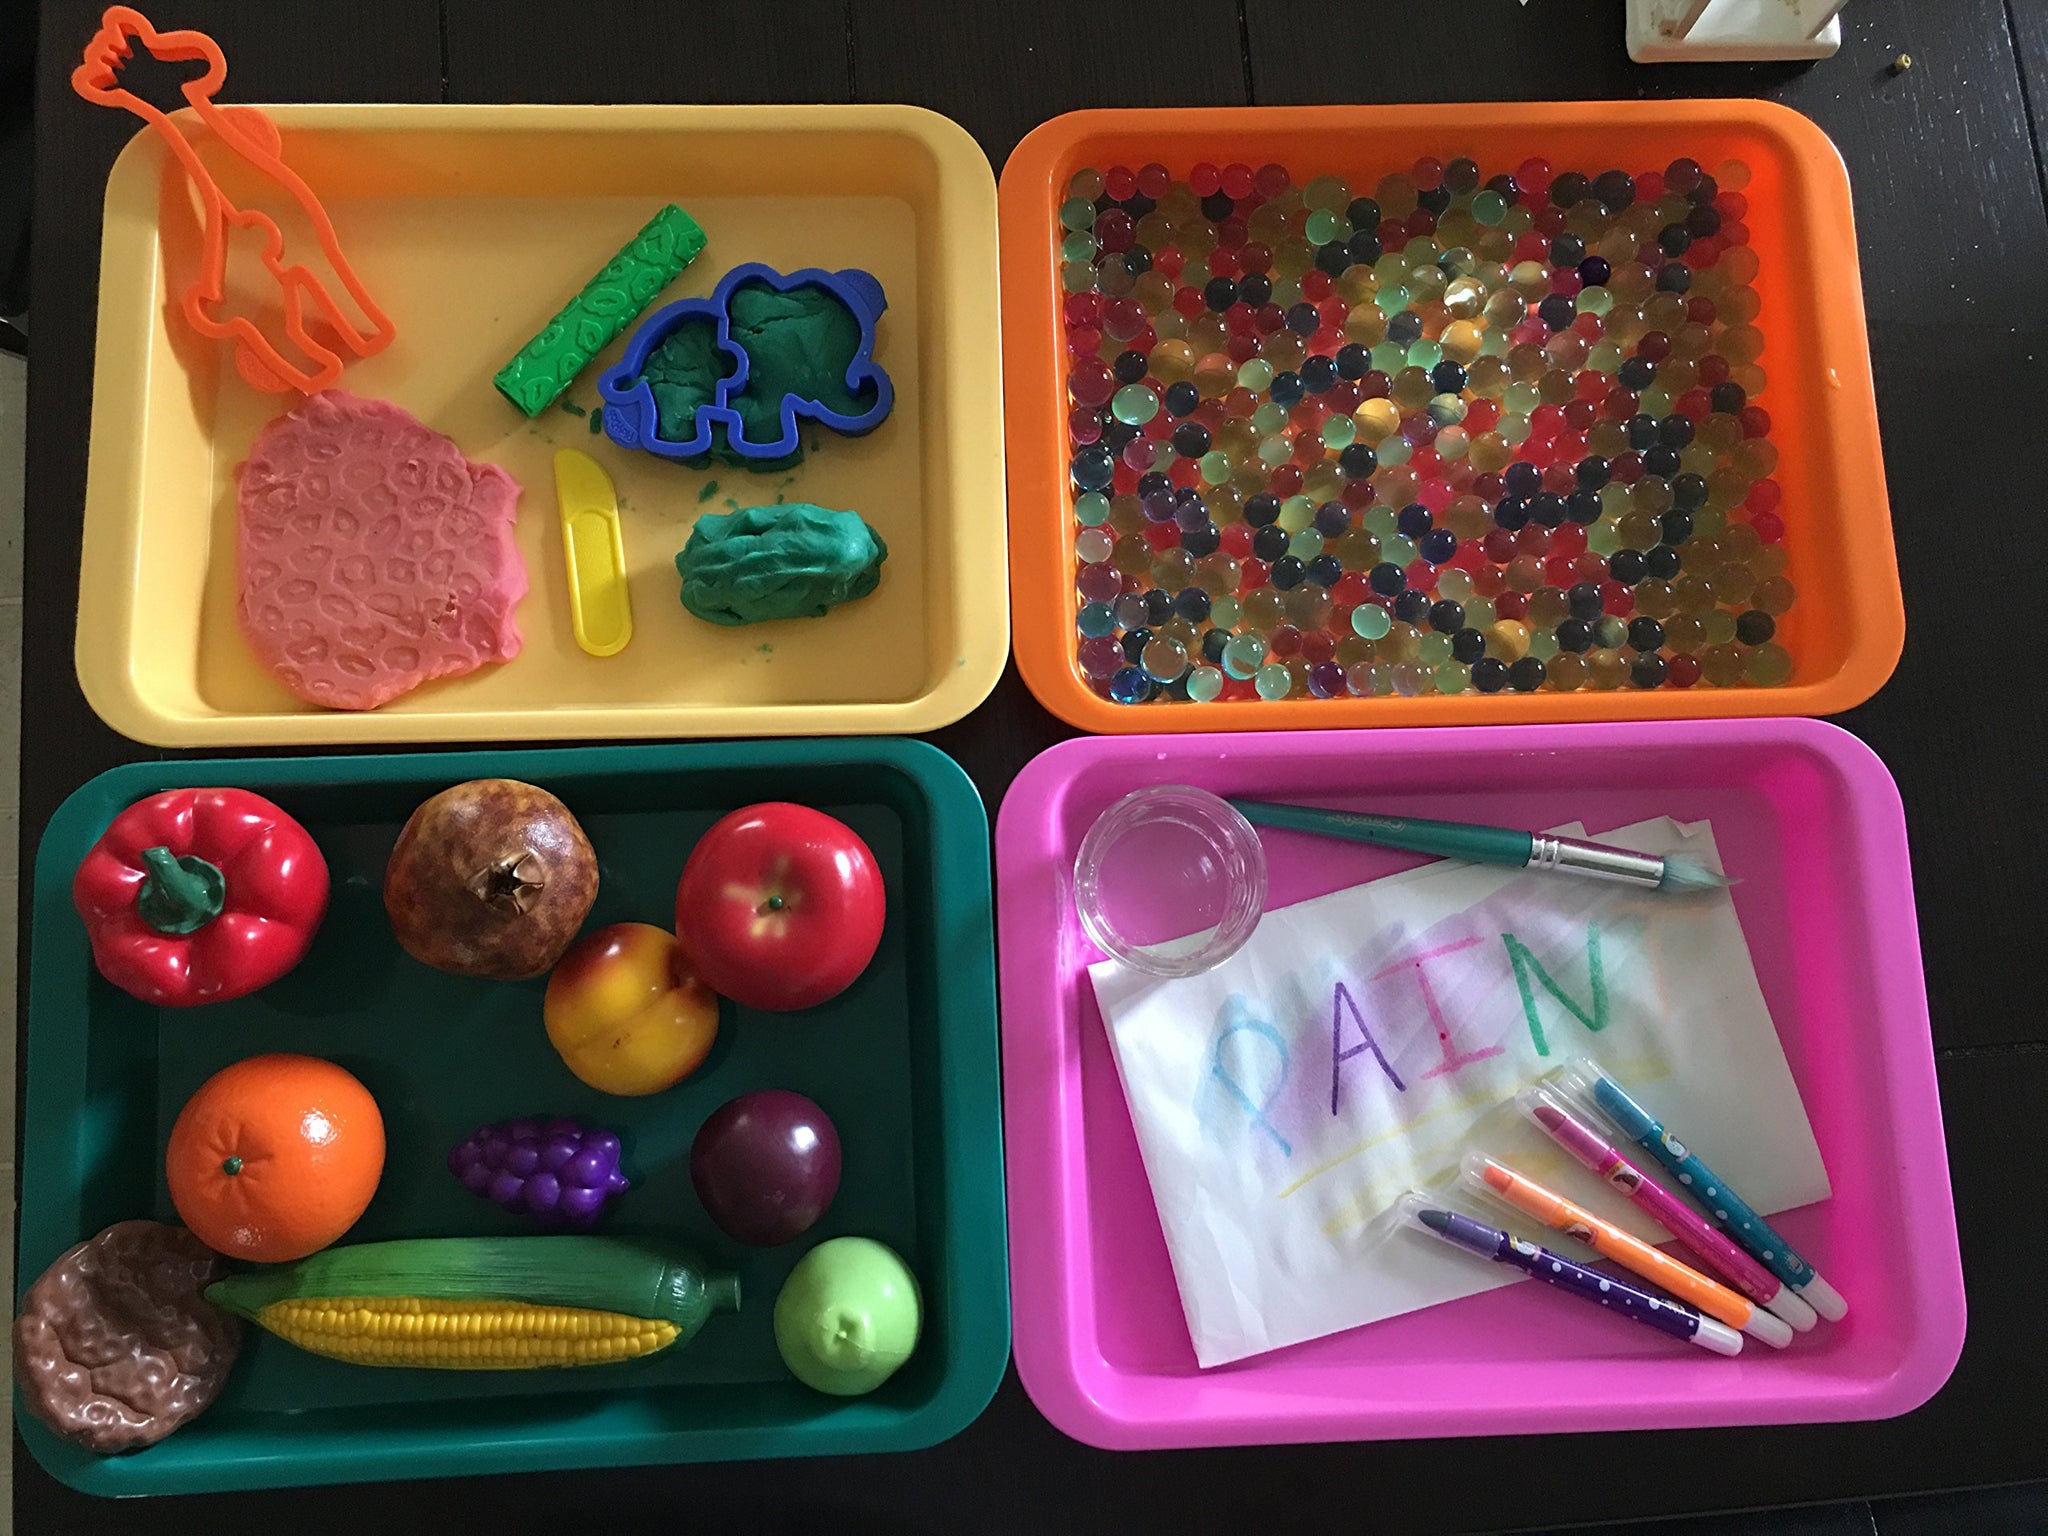 Plastic Tray Color Art Trays Activity Tray Kids Activity Trays Crafts  Storage Box Tea Tray 4pcs